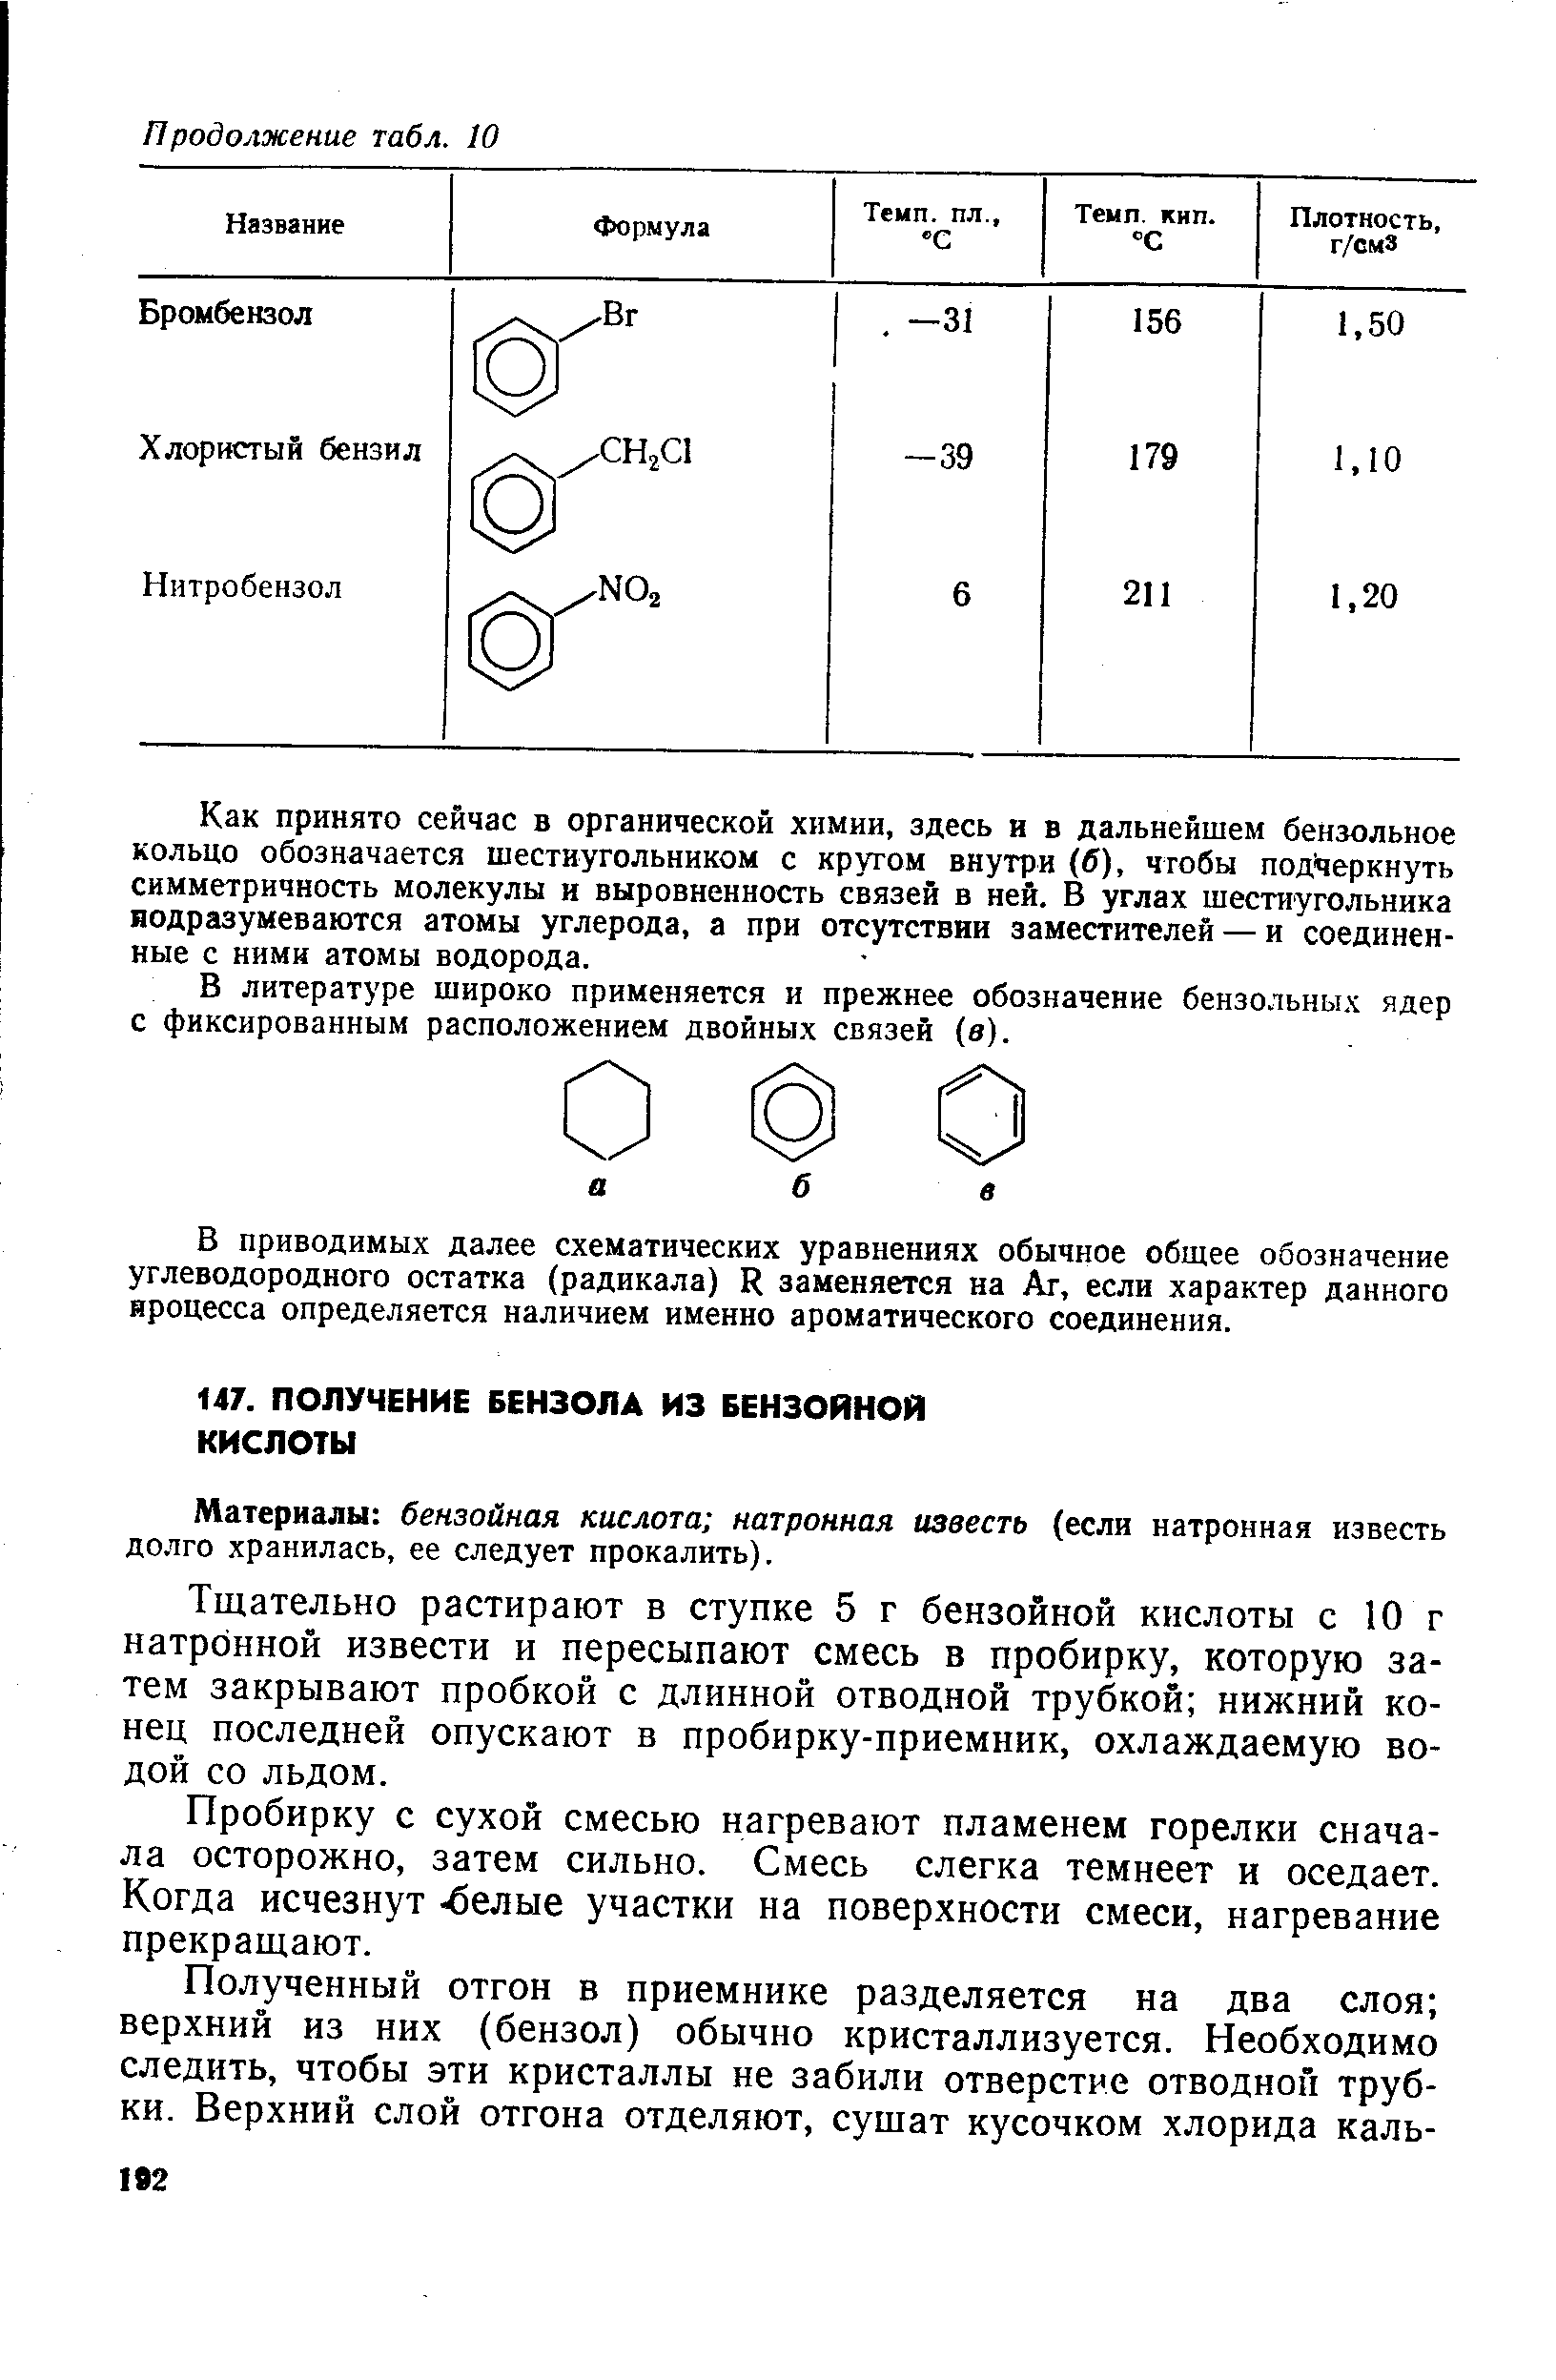 Материалы бензойная кислота натронная известь (если натронная известь долго хранилась, ее следует прокалить).